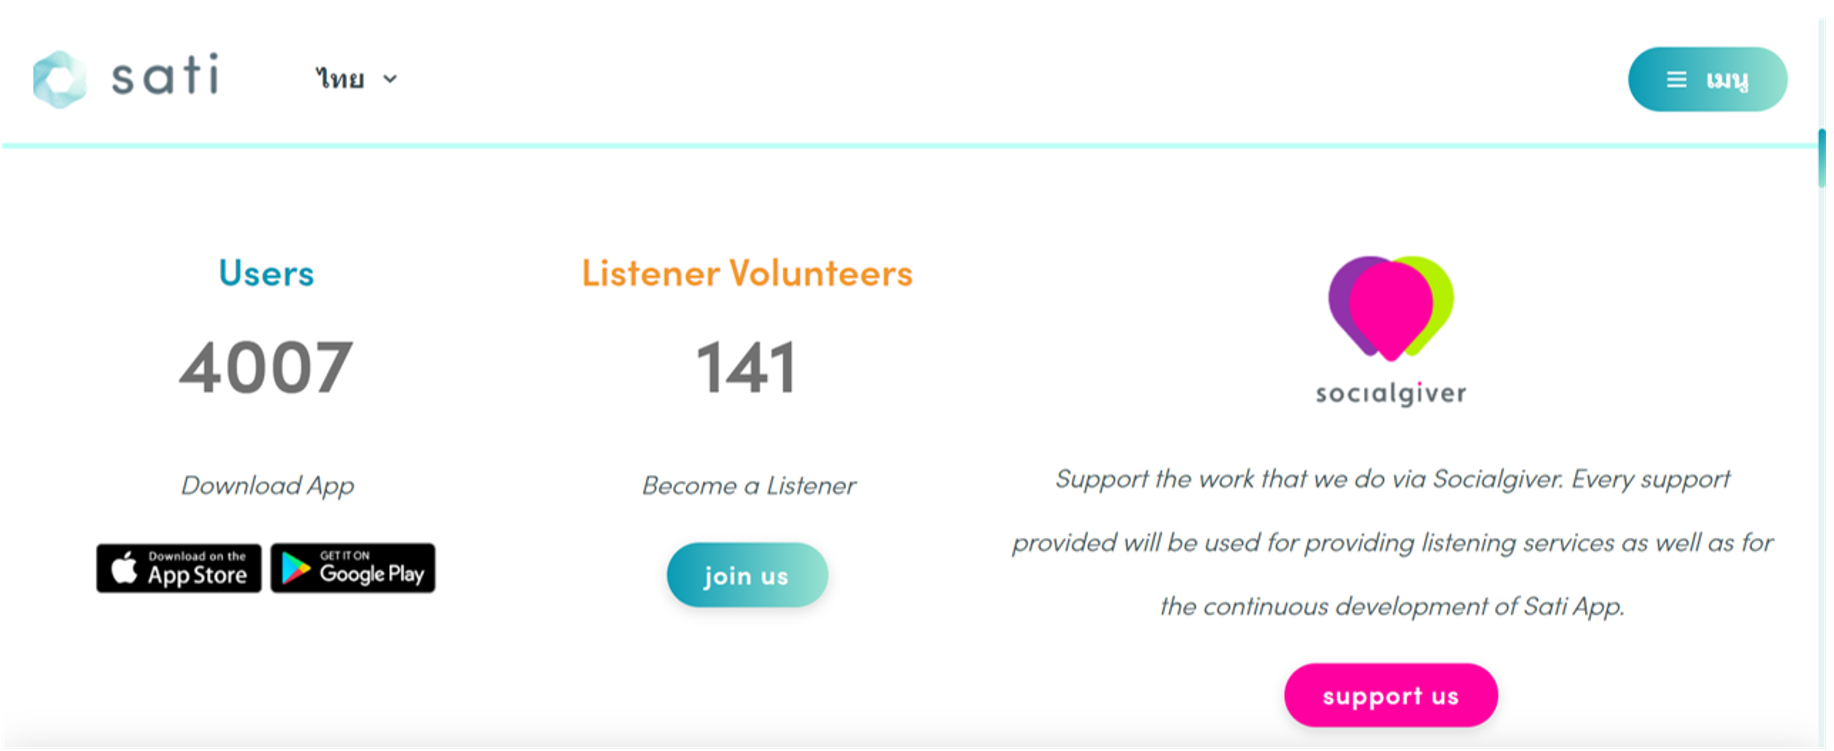 หน้าเว็บไซต์ สำหรับผู้ที่ต้องการสมัครเป็น Listener บน Sati App เลือก “join us” ตรง “Listener Volunteers” (ข้อมูล ณ วันที่ 28 สิงหาคม 2564)